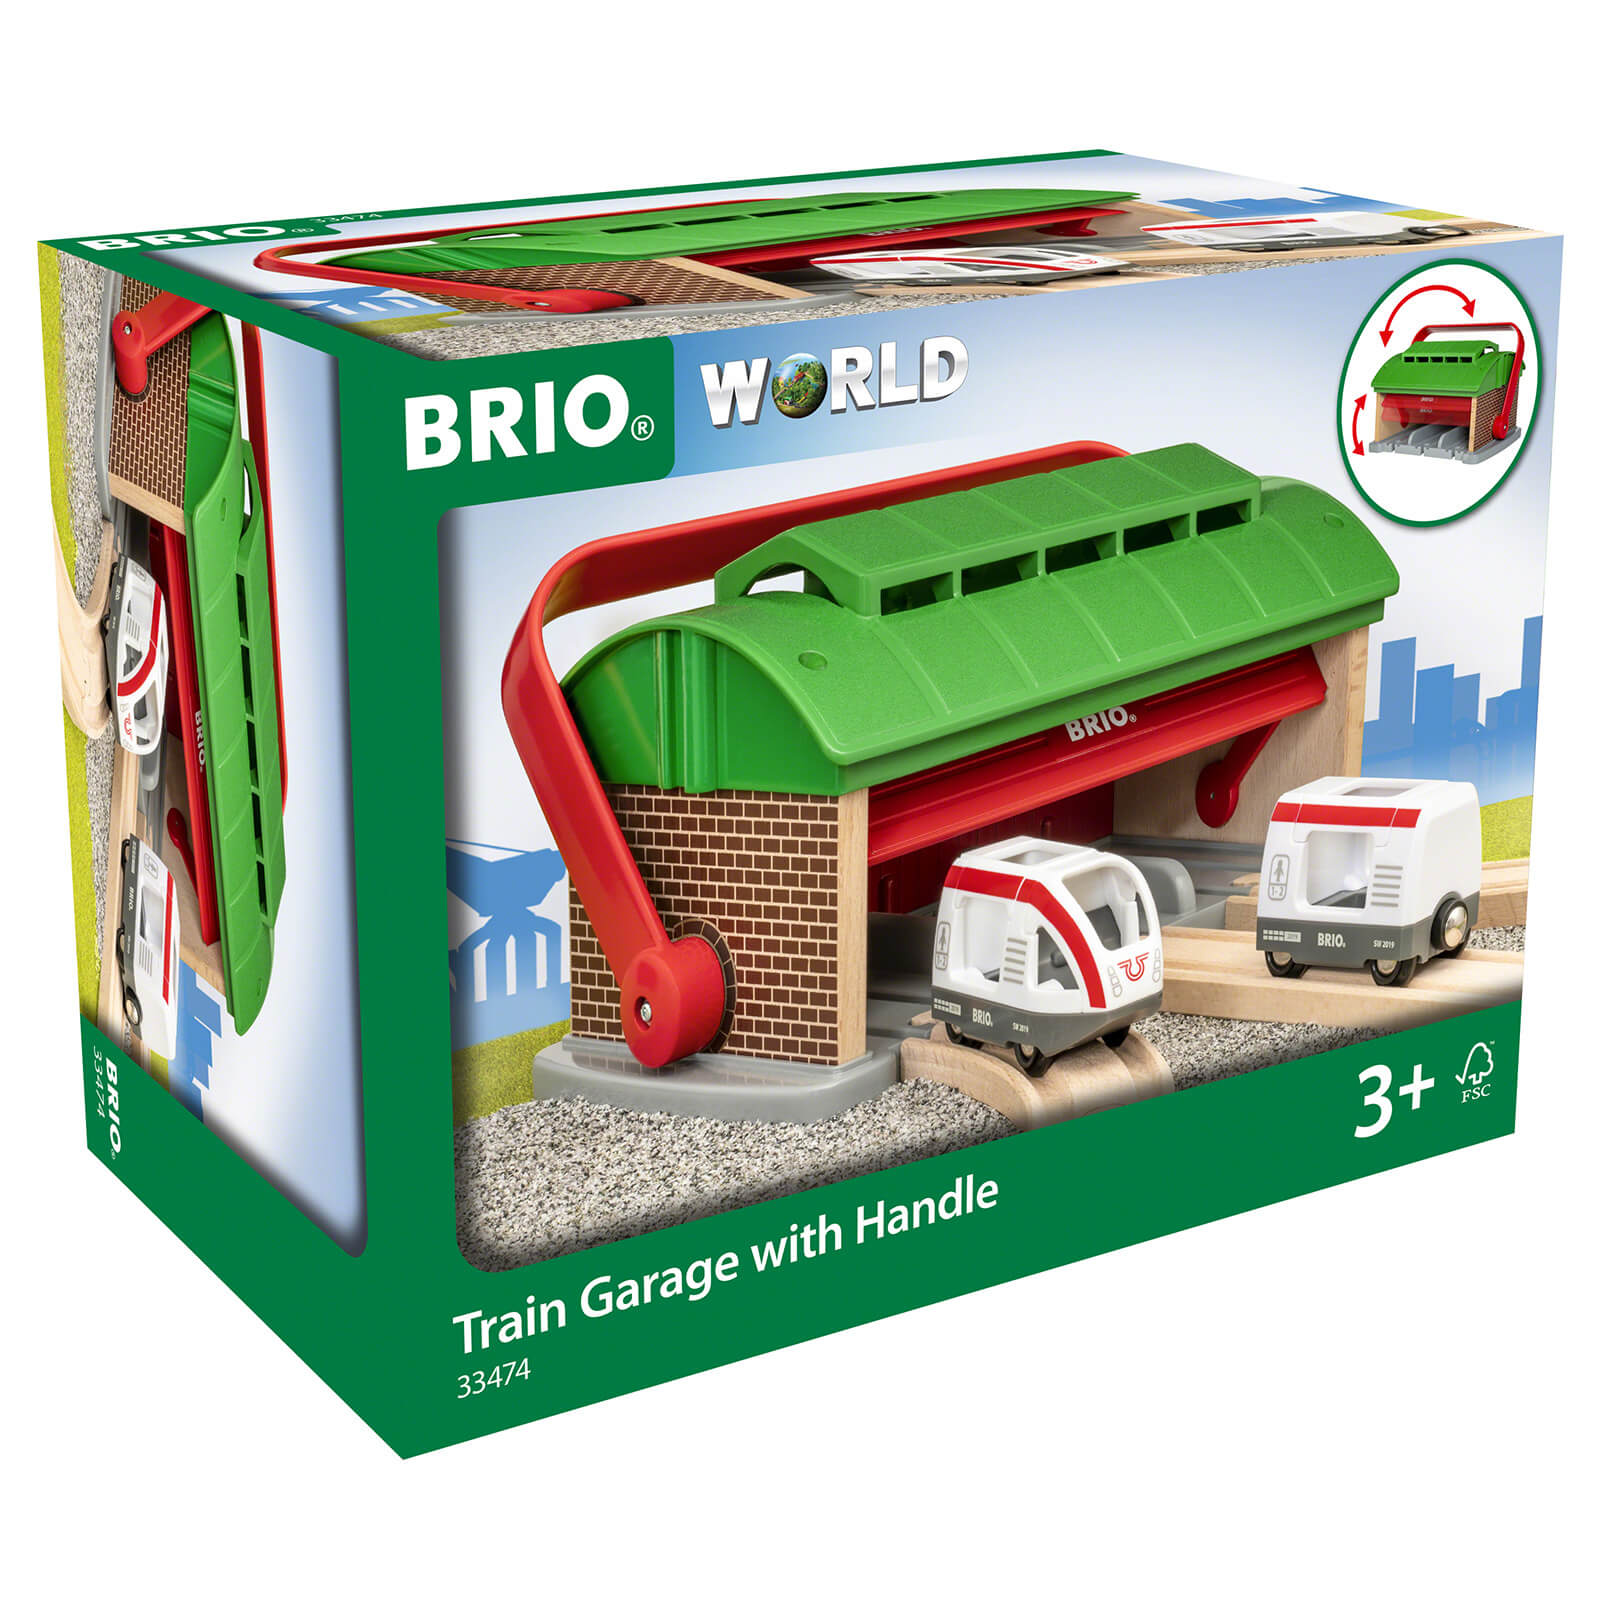 Brio Train Garage with Handle